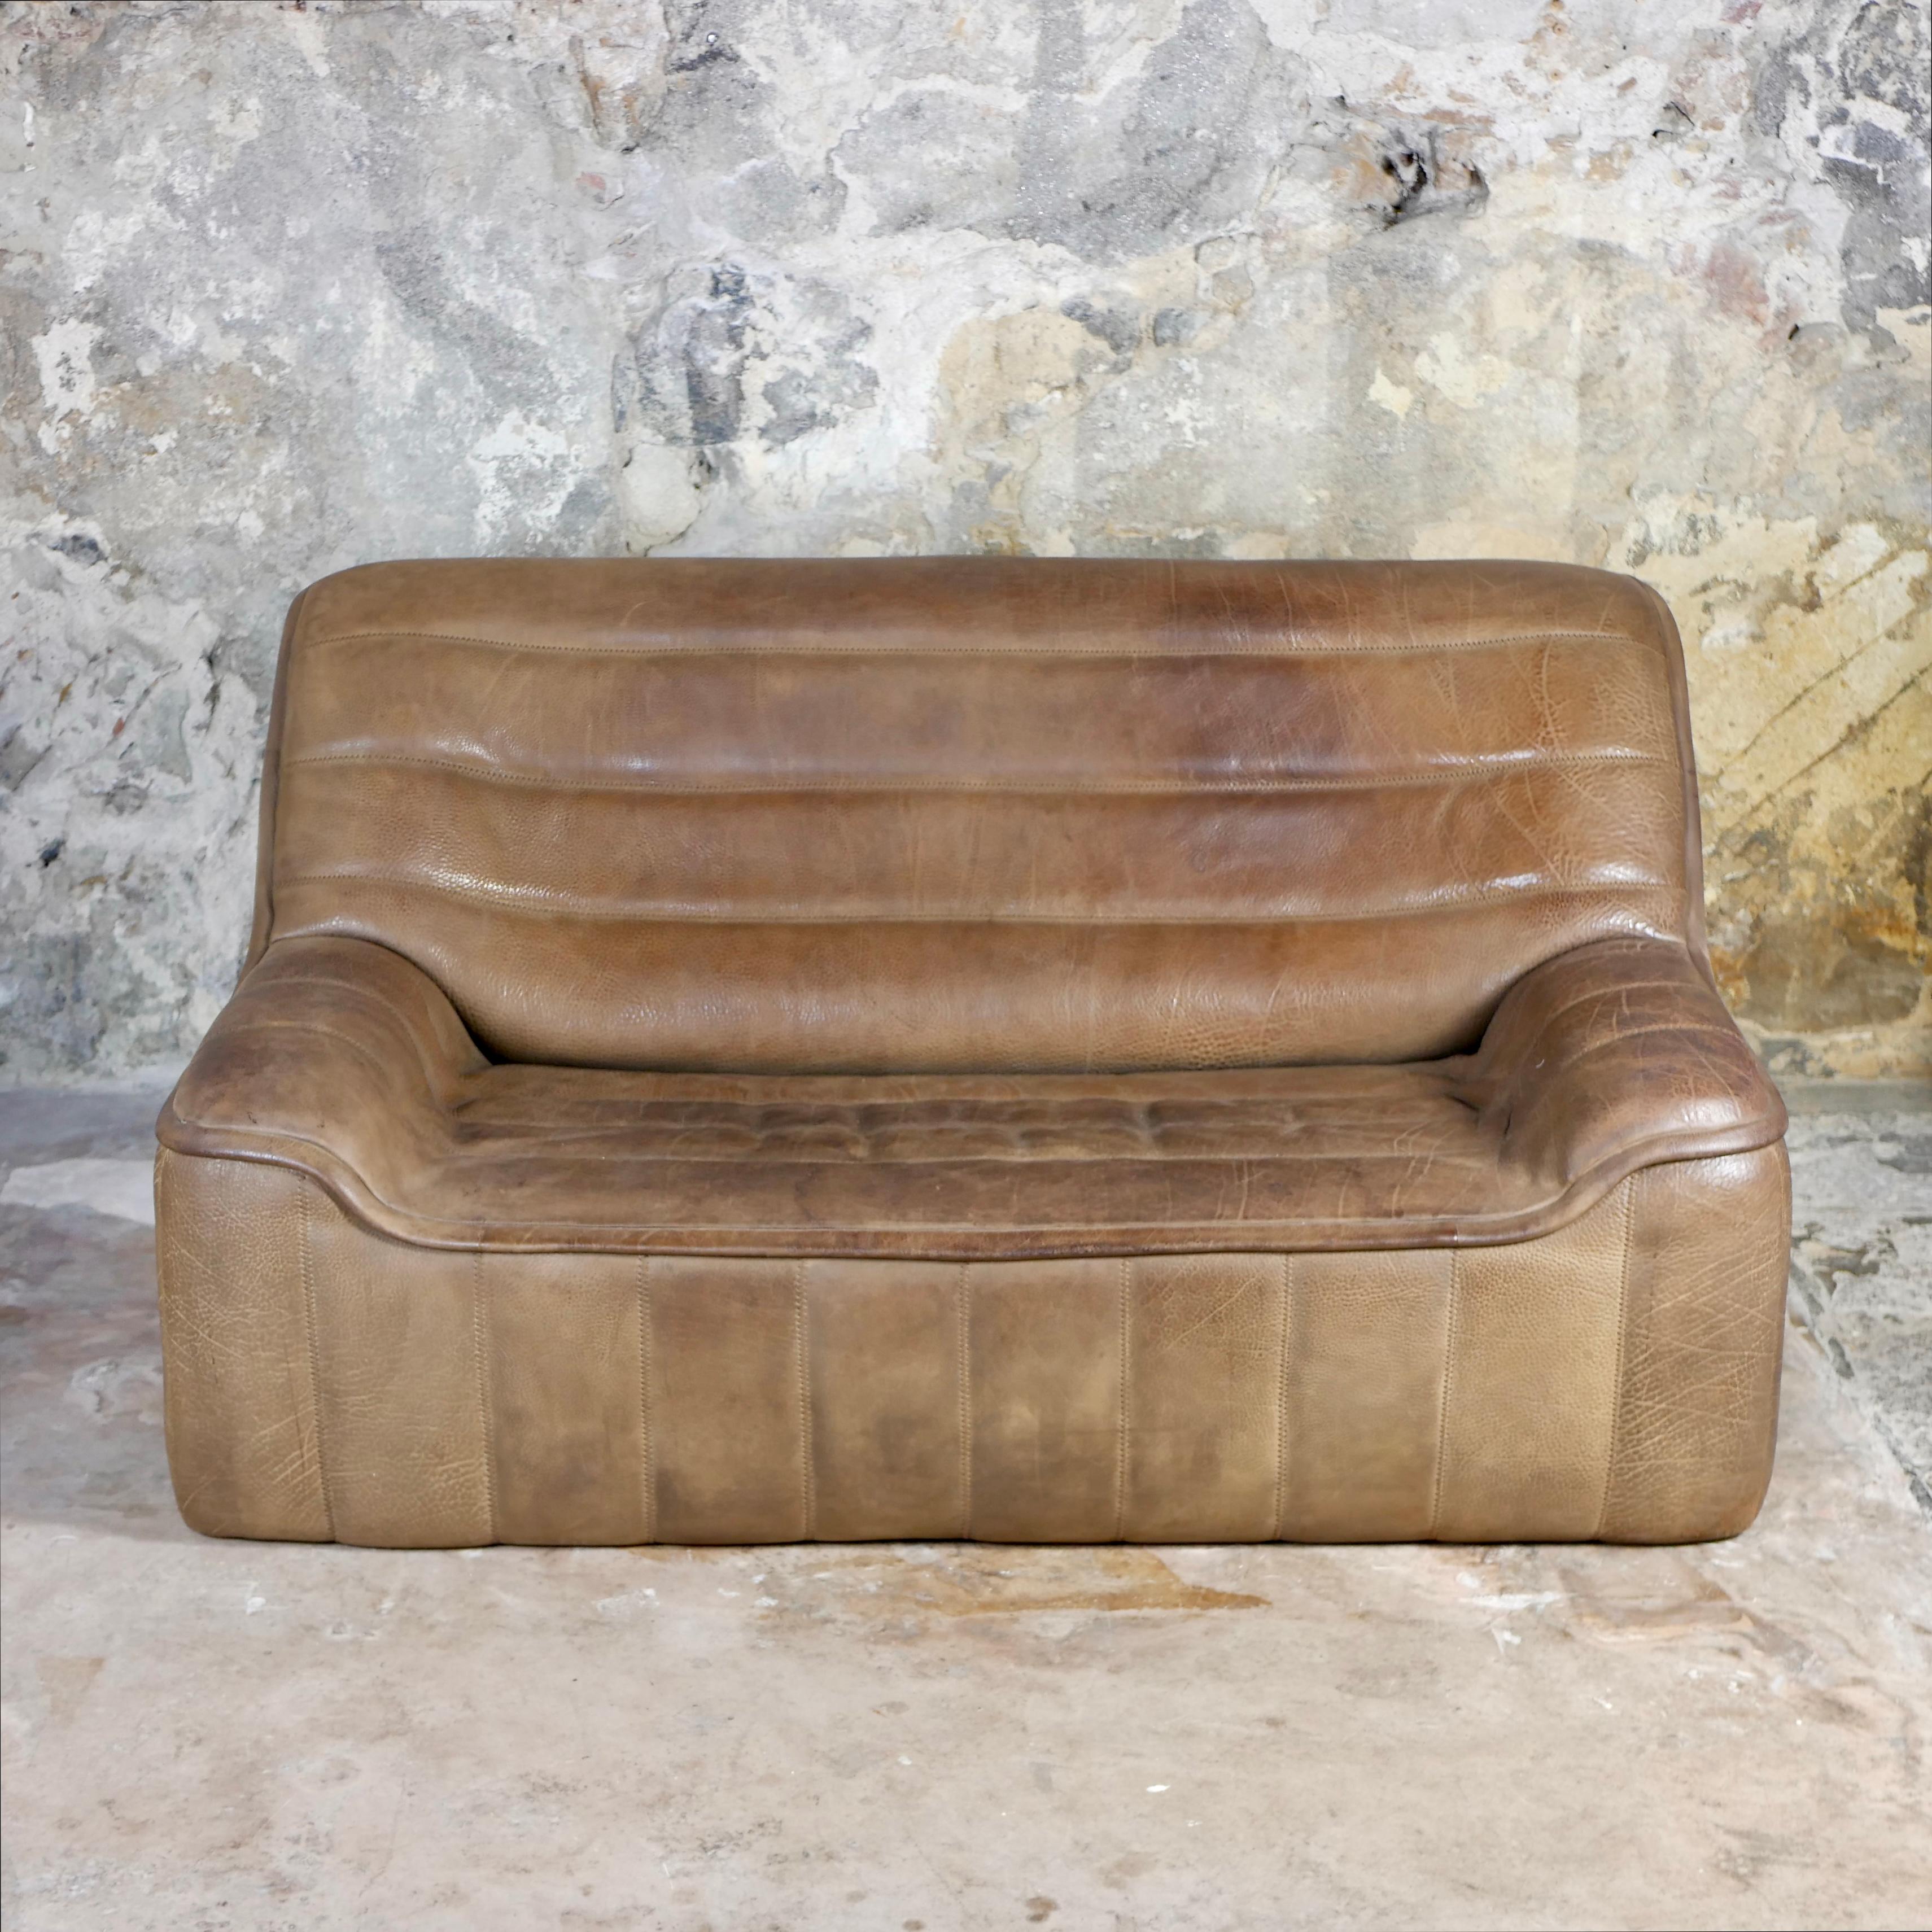 Schönes Sofa von De Sede, Modell DS-84, in taupefarbenem Büffelleder, hergestellt in der Schweiz in den 1970er Jahren.
Schöne Nahtdetails, schöne Patina und Ledernarbung.
De Sede ist bekannt für seine hochwertigen Ledermöbel.
Insgesamt guter